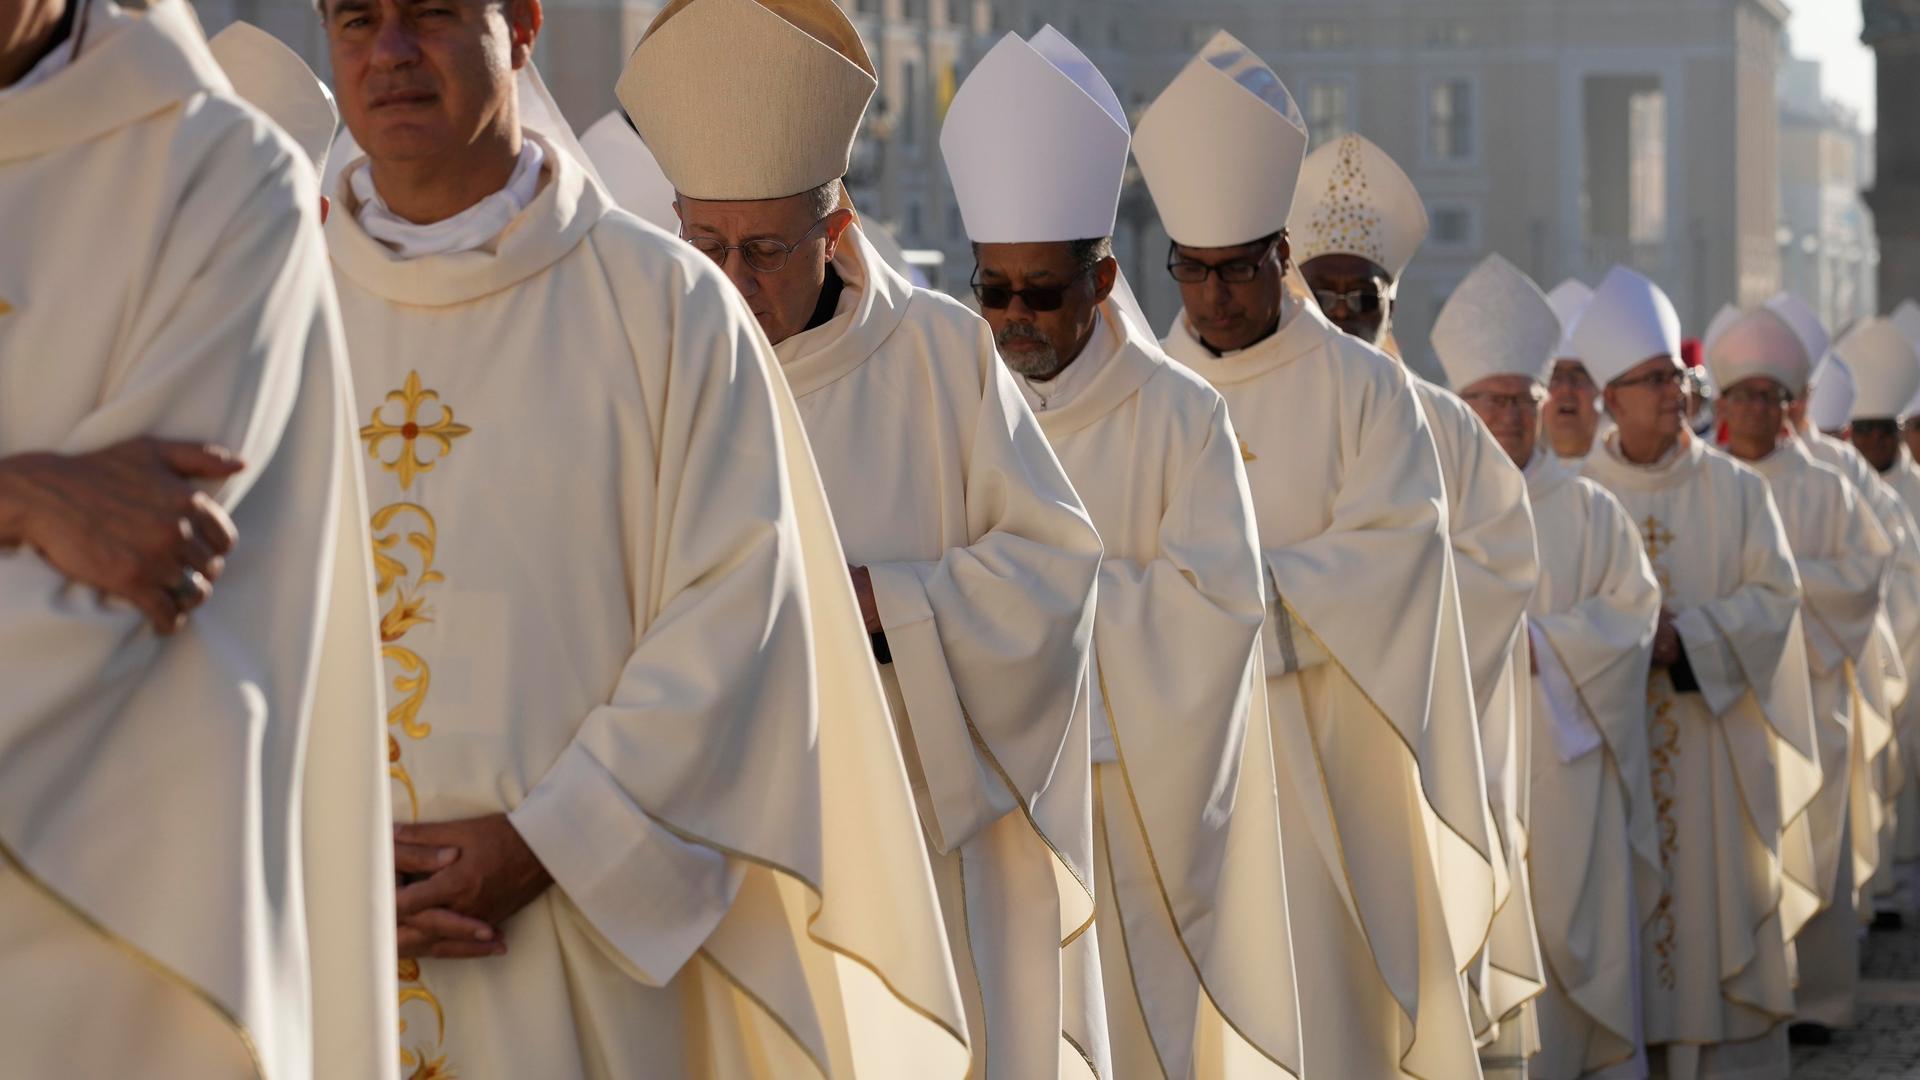 Zu sehen sind katholische Bischöfe im weißen Ornat auf dem Weg zur Synode in Rom.